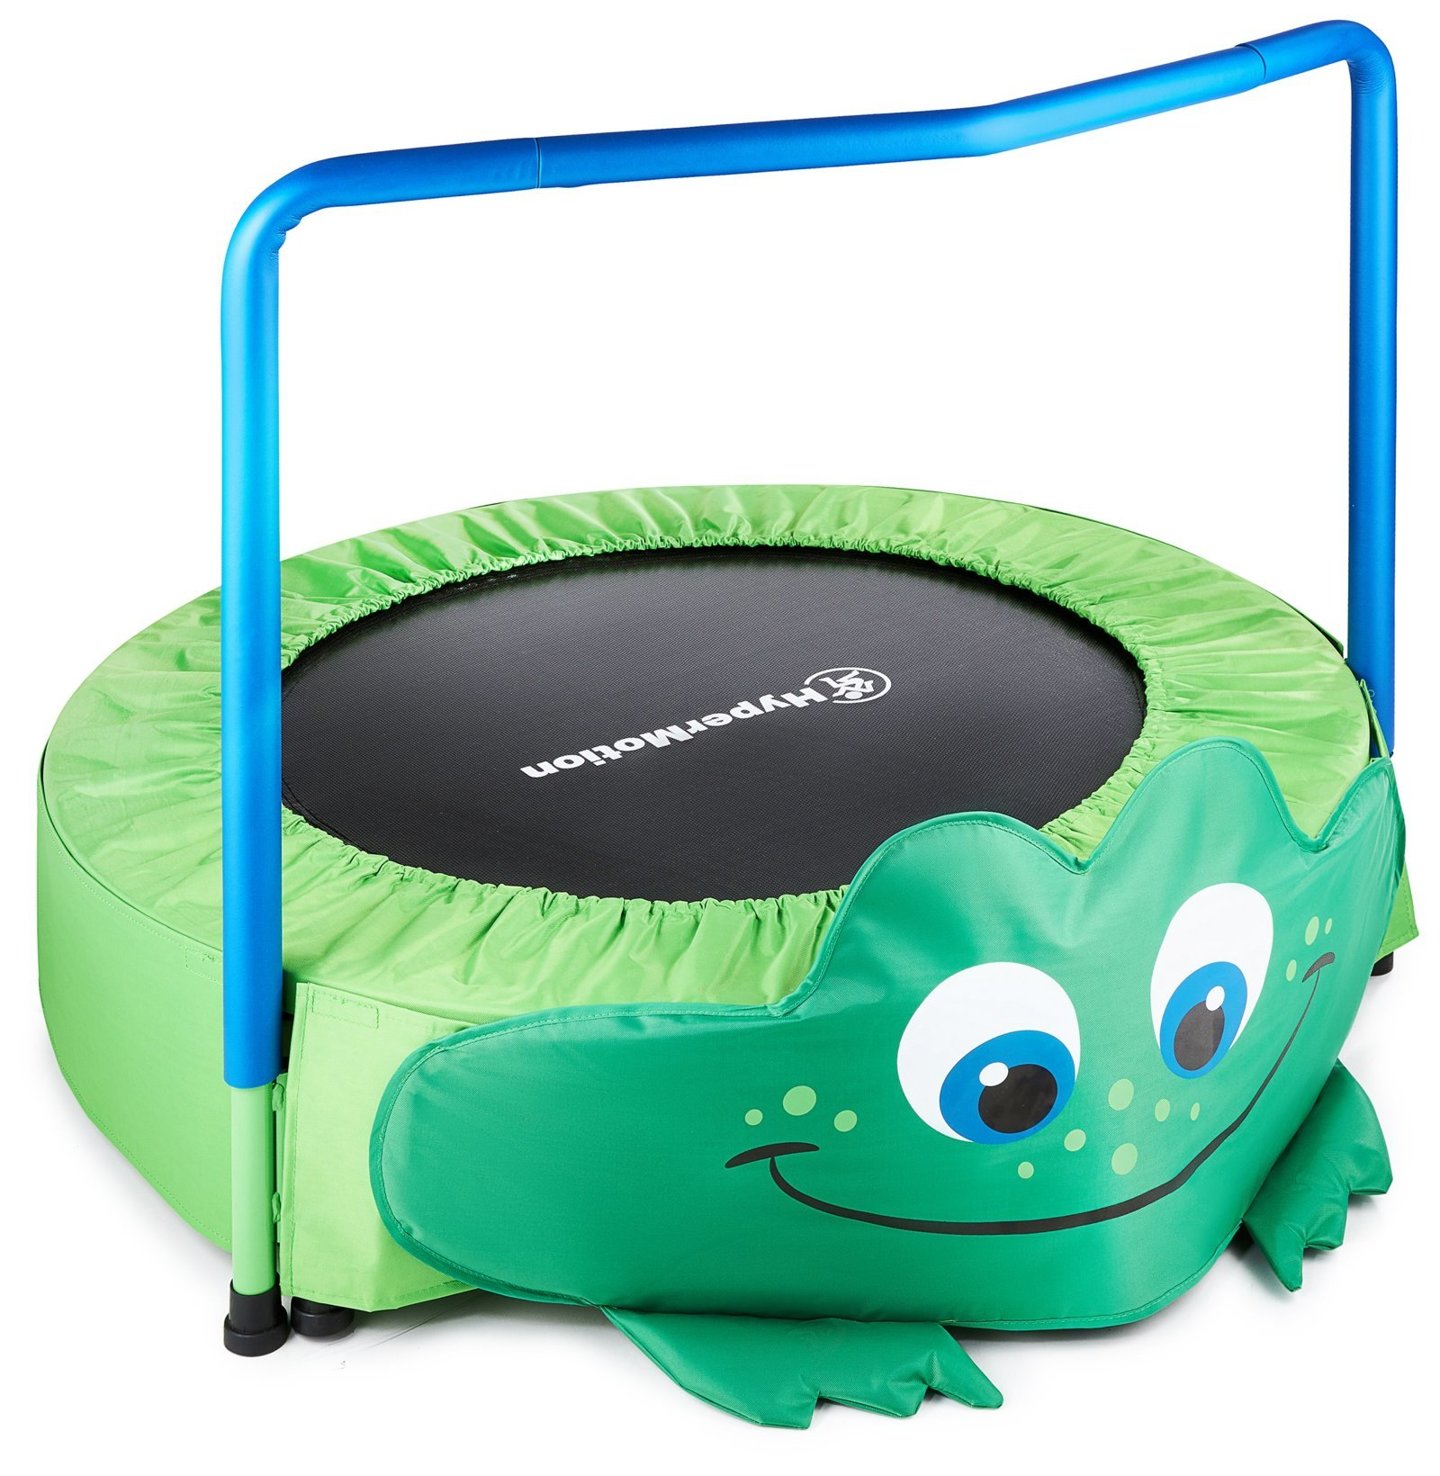 Żabka - mini trampolina dla dzieci - z rączką - 91cm -  do domu i ogrodu